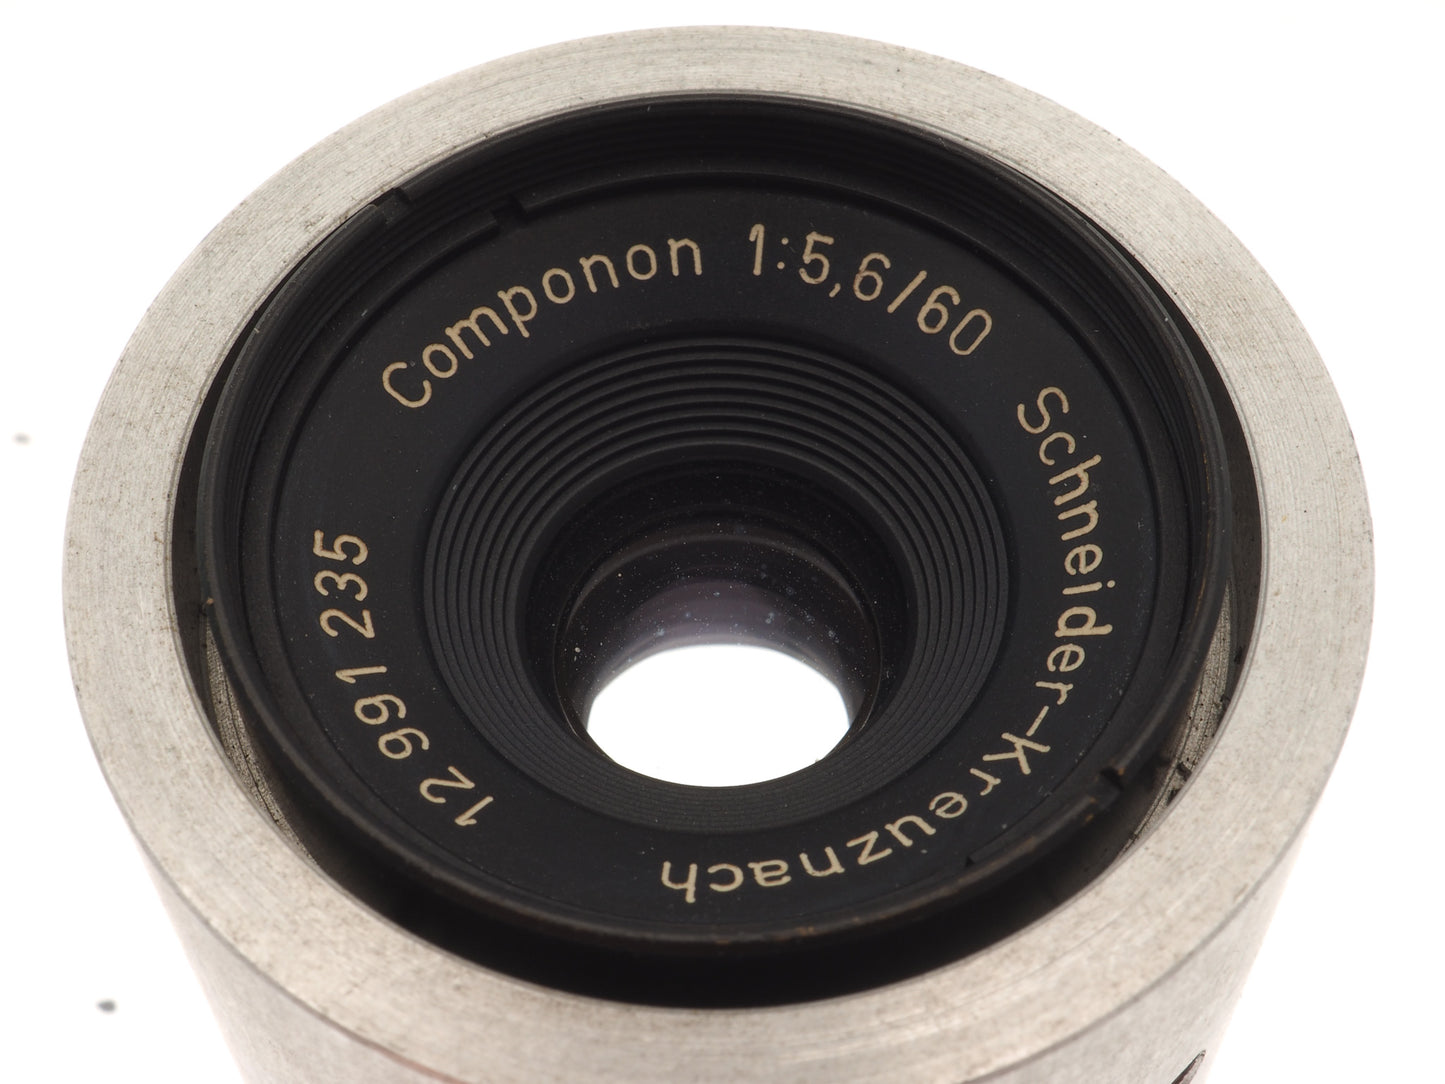 Schneider-Kreuznach 60mm f5.6 - Lens